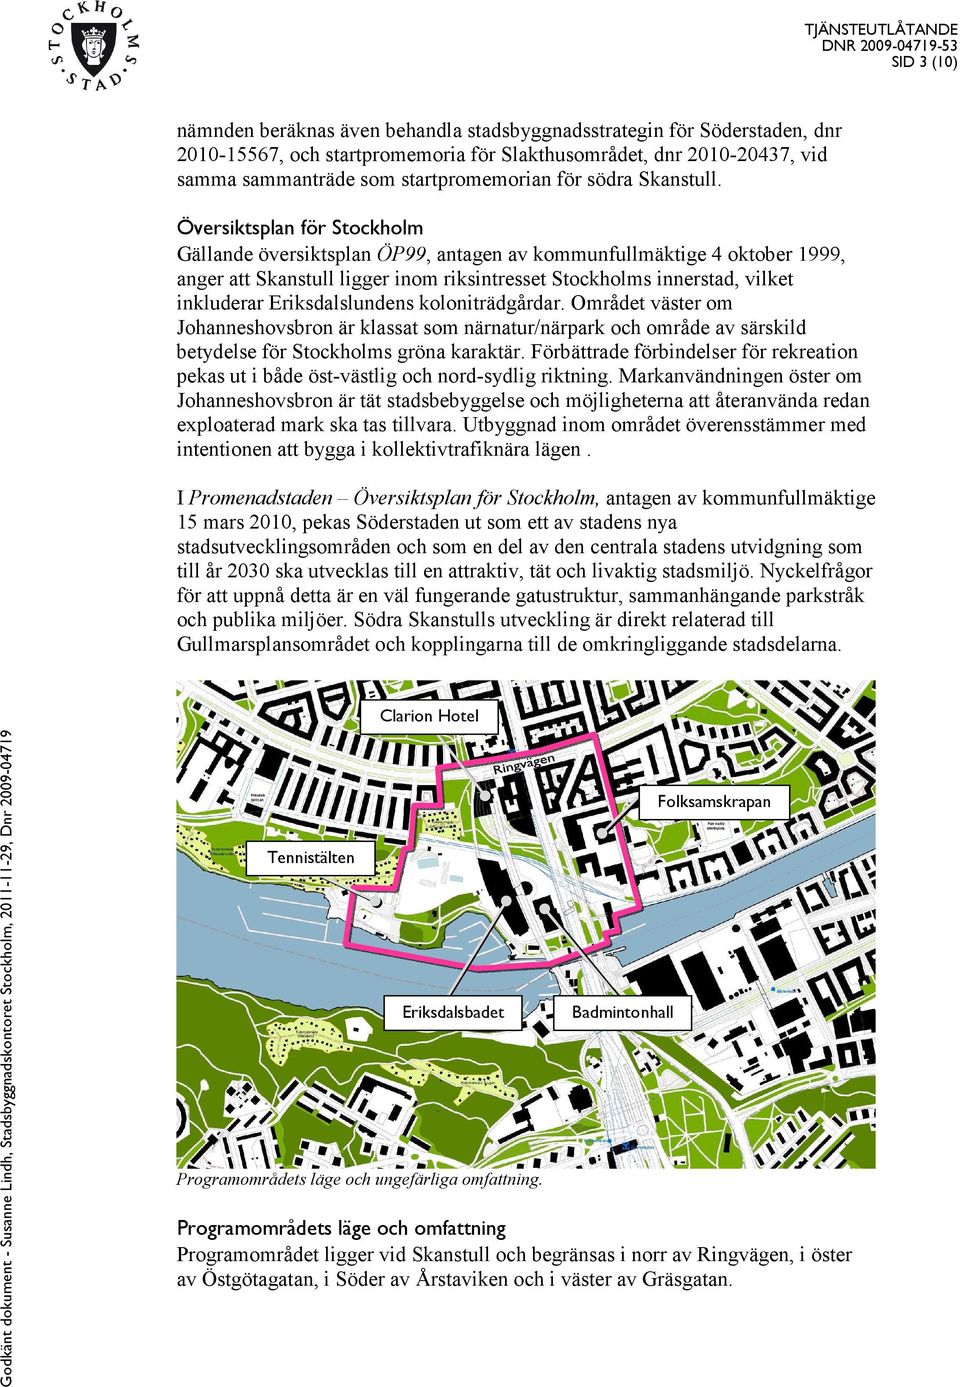 Översiktsplan för Stockholm Gällande översiktsplan ÖP99, antagen av kommunfullmäktige 4 oktober 1999, anger att Skanstull ligger inom riksintresset Stockholms innerstad, vilket inkluderar